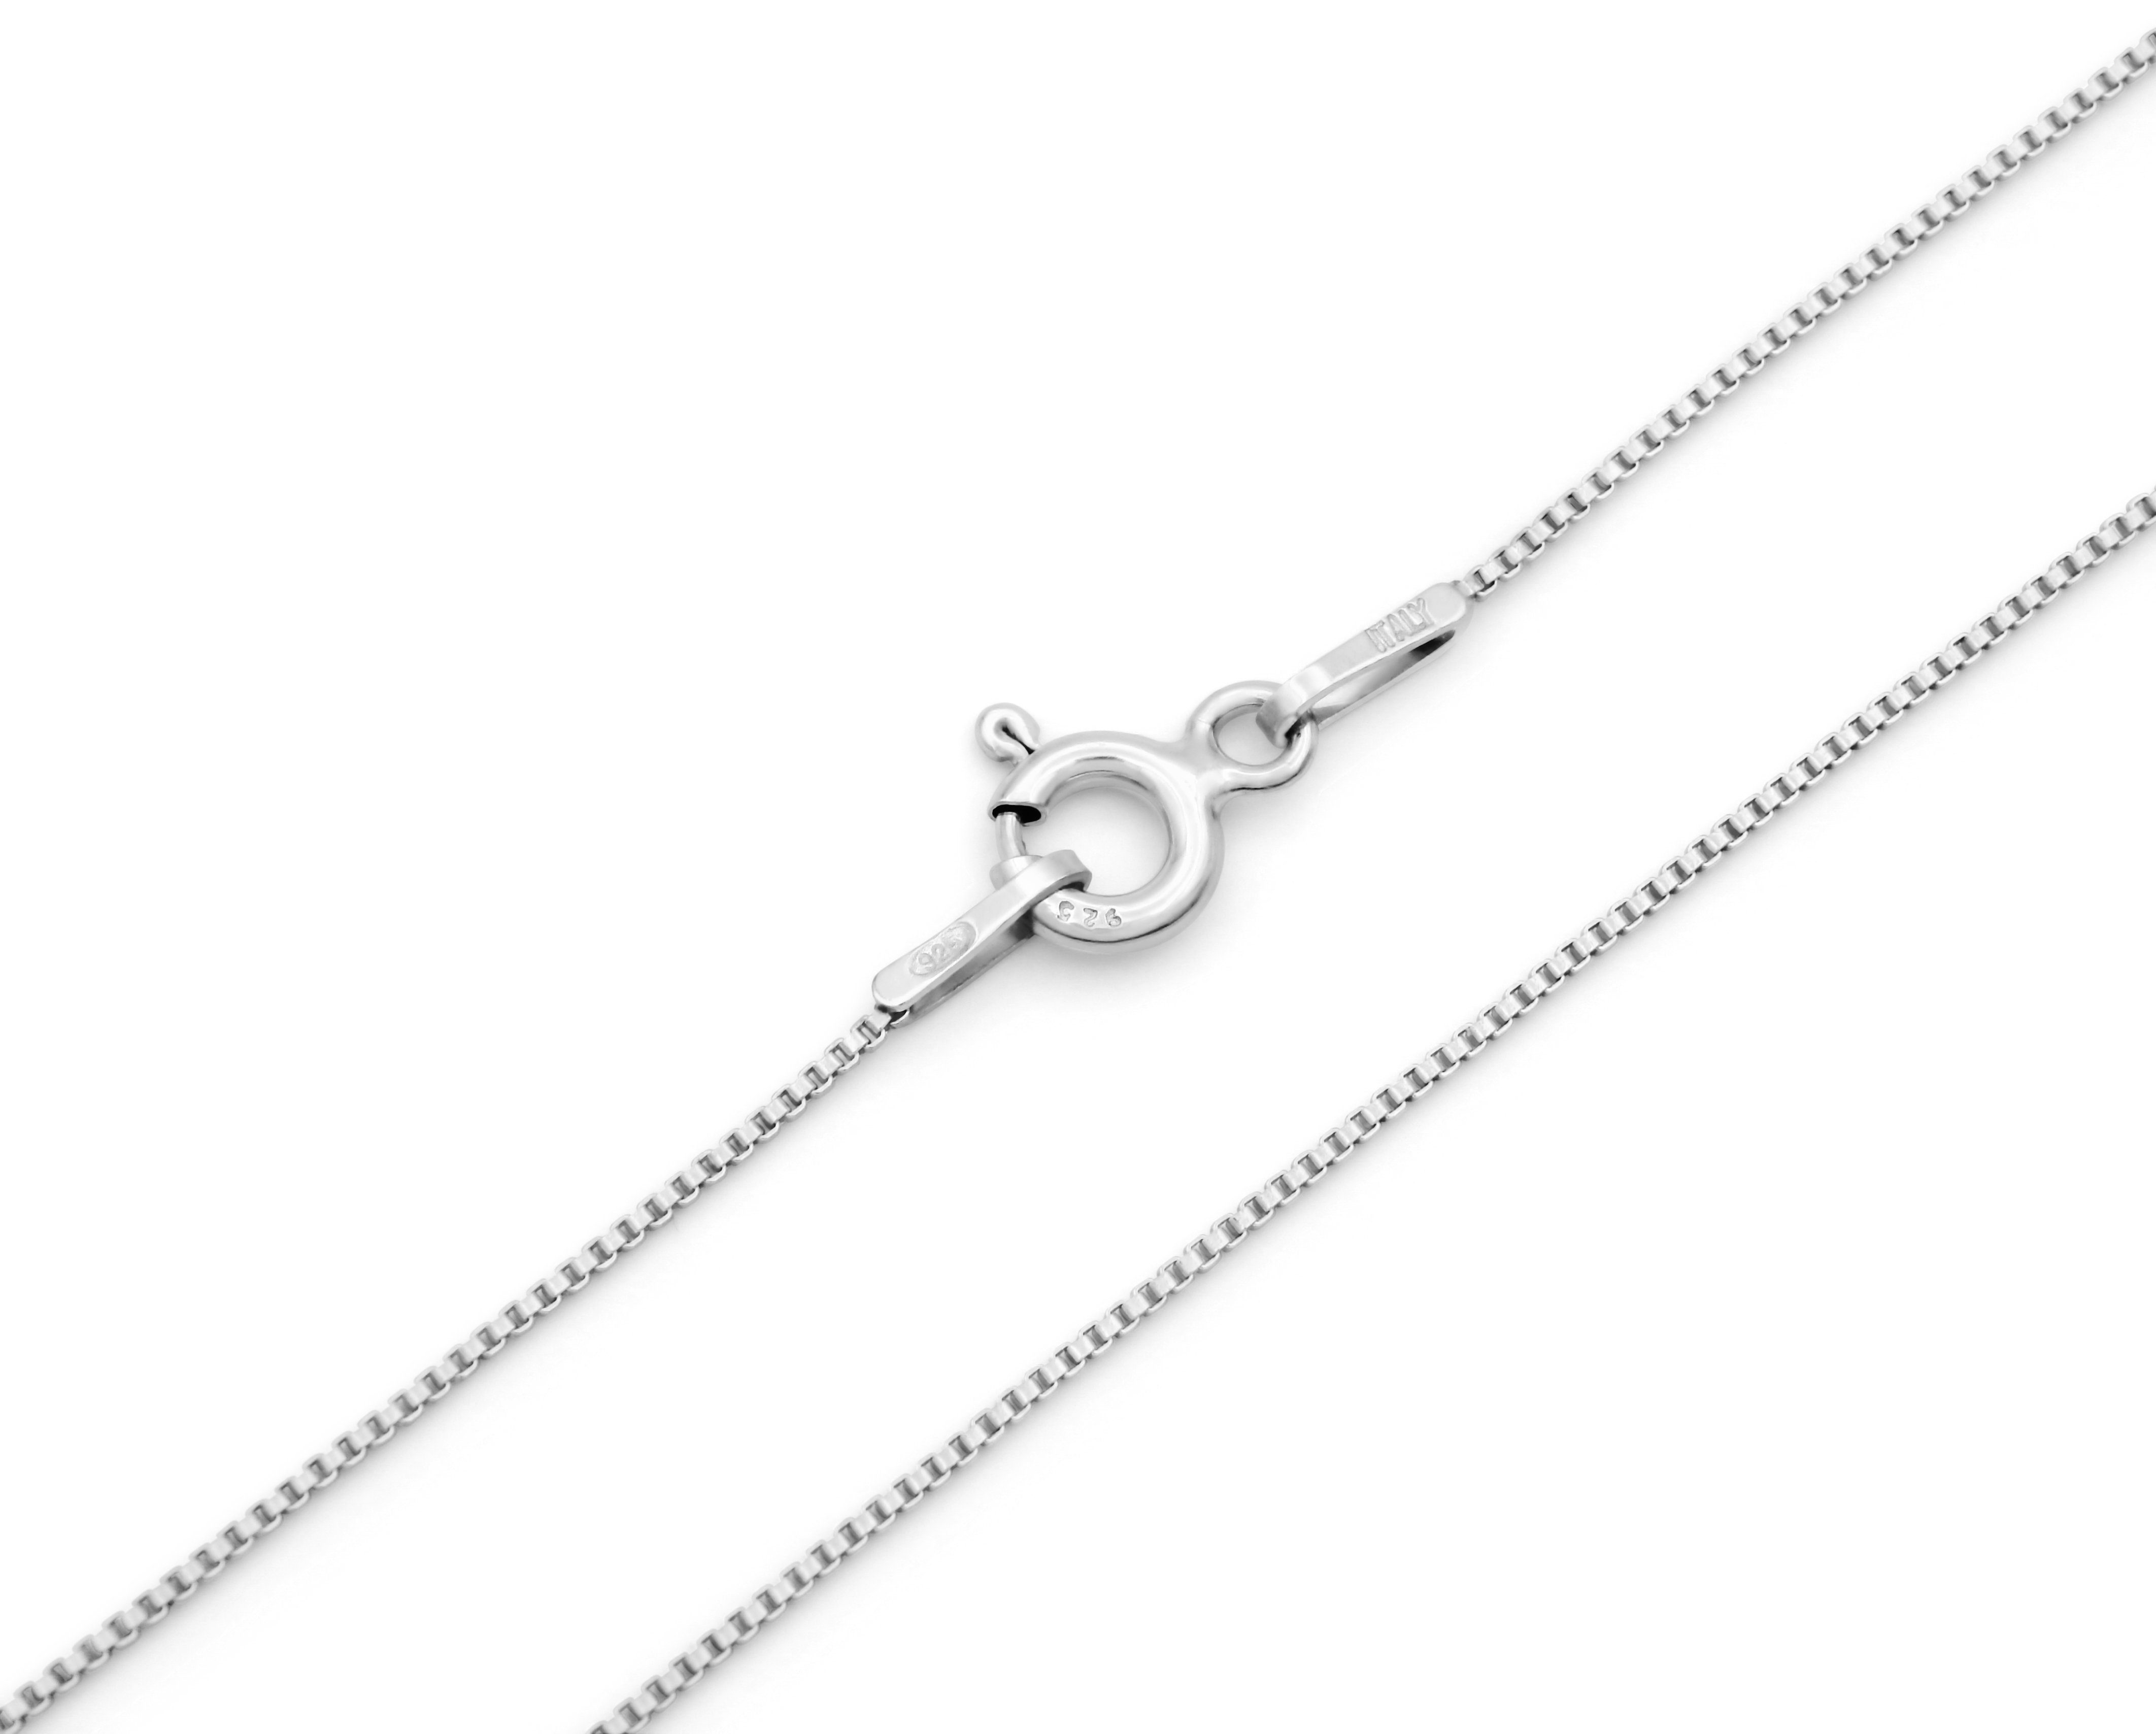 Kauf-mich-weg by Bella T Silberkette 925 Silber 40 Sterling 0,7mm breit, Länge wählbar - rhodiniert Venezianerkette 55cm